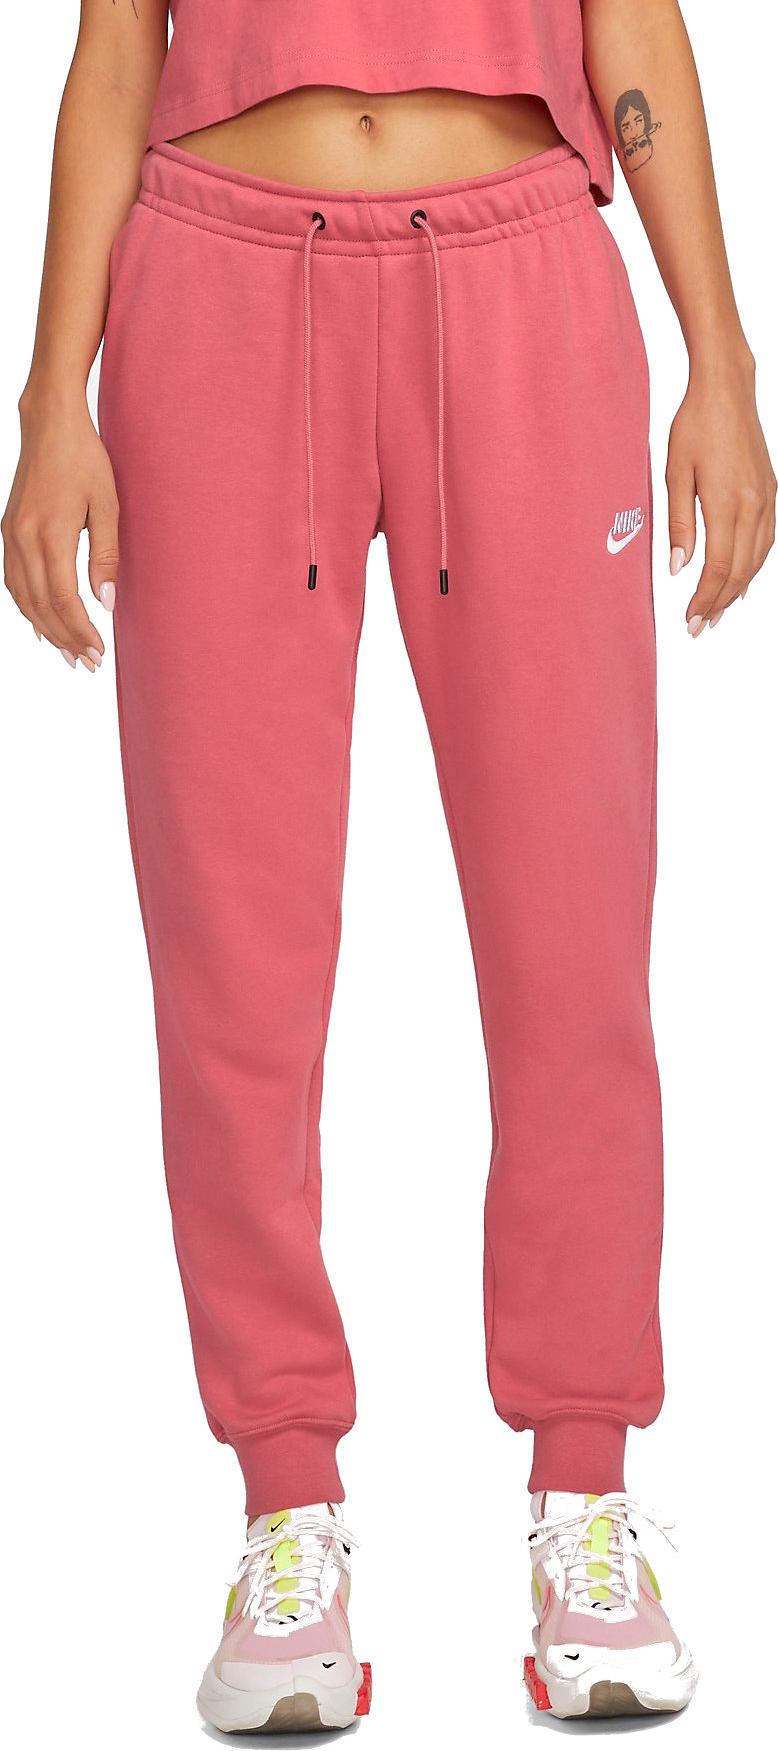 Spodnie Nike Sportswear Essential Women s Fleece Pants